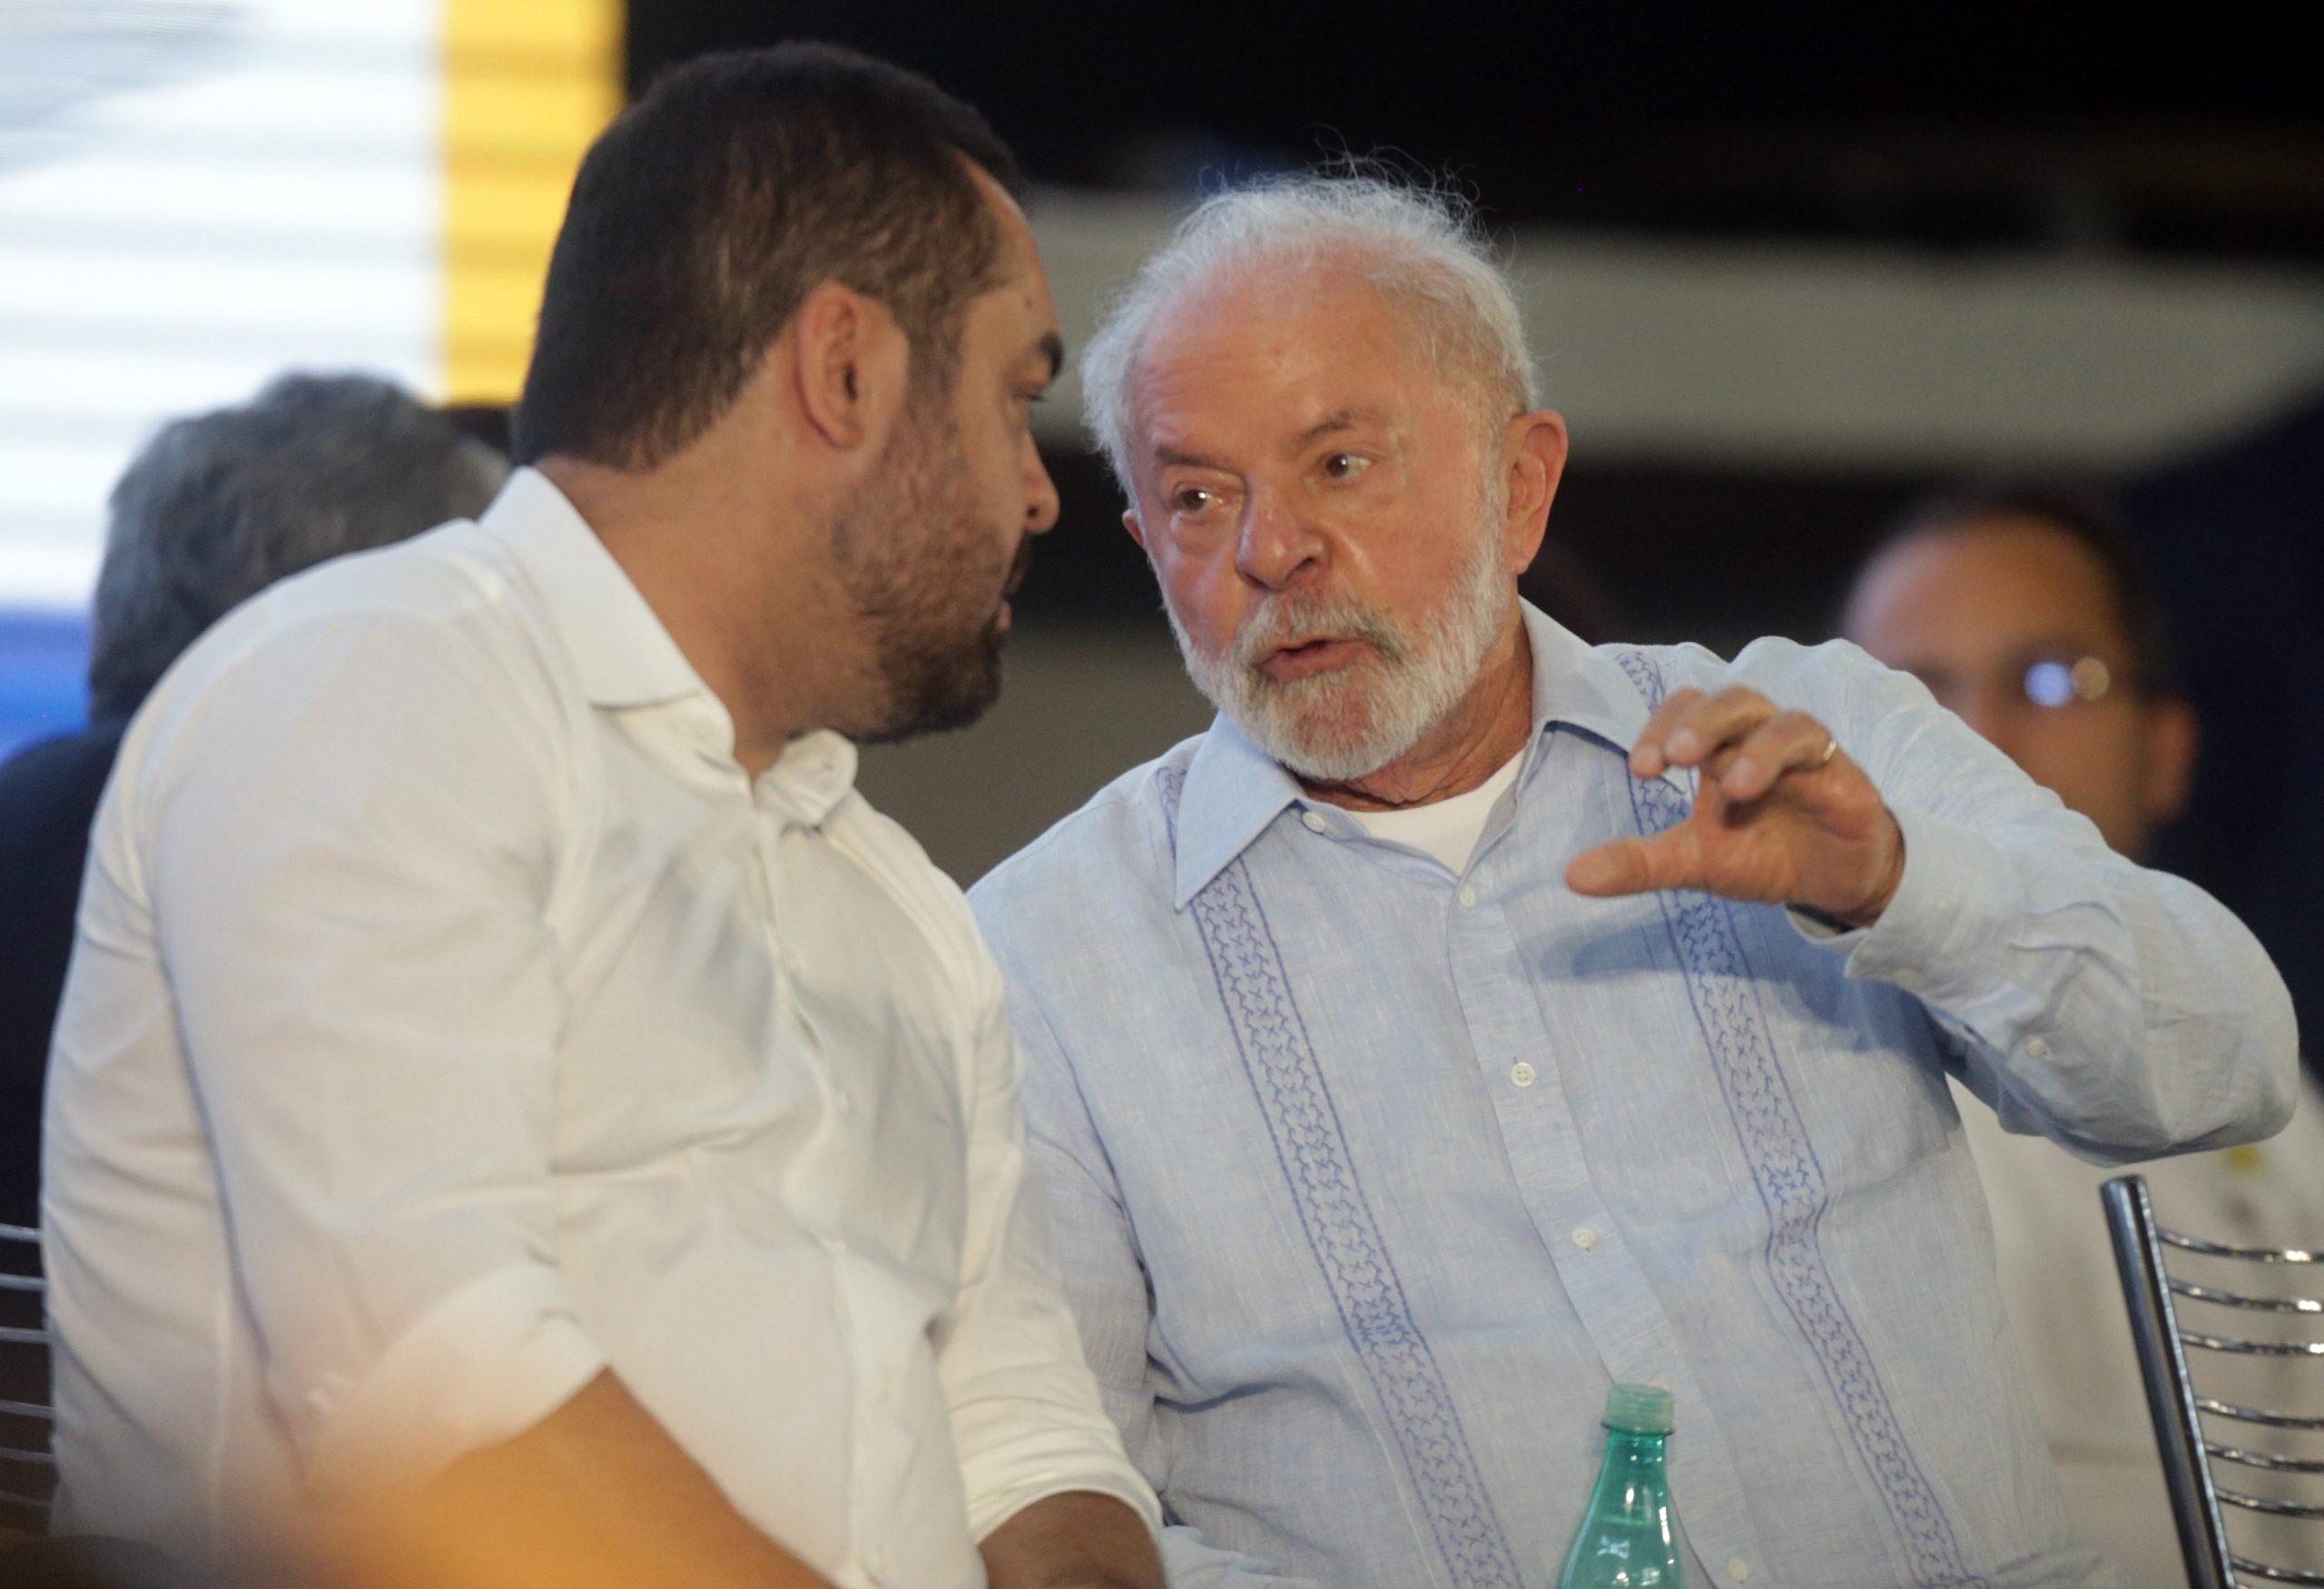 Governador do Rio, Cláudio Castro, elogia experiência de Lula e destaca cooperação em momento de crise